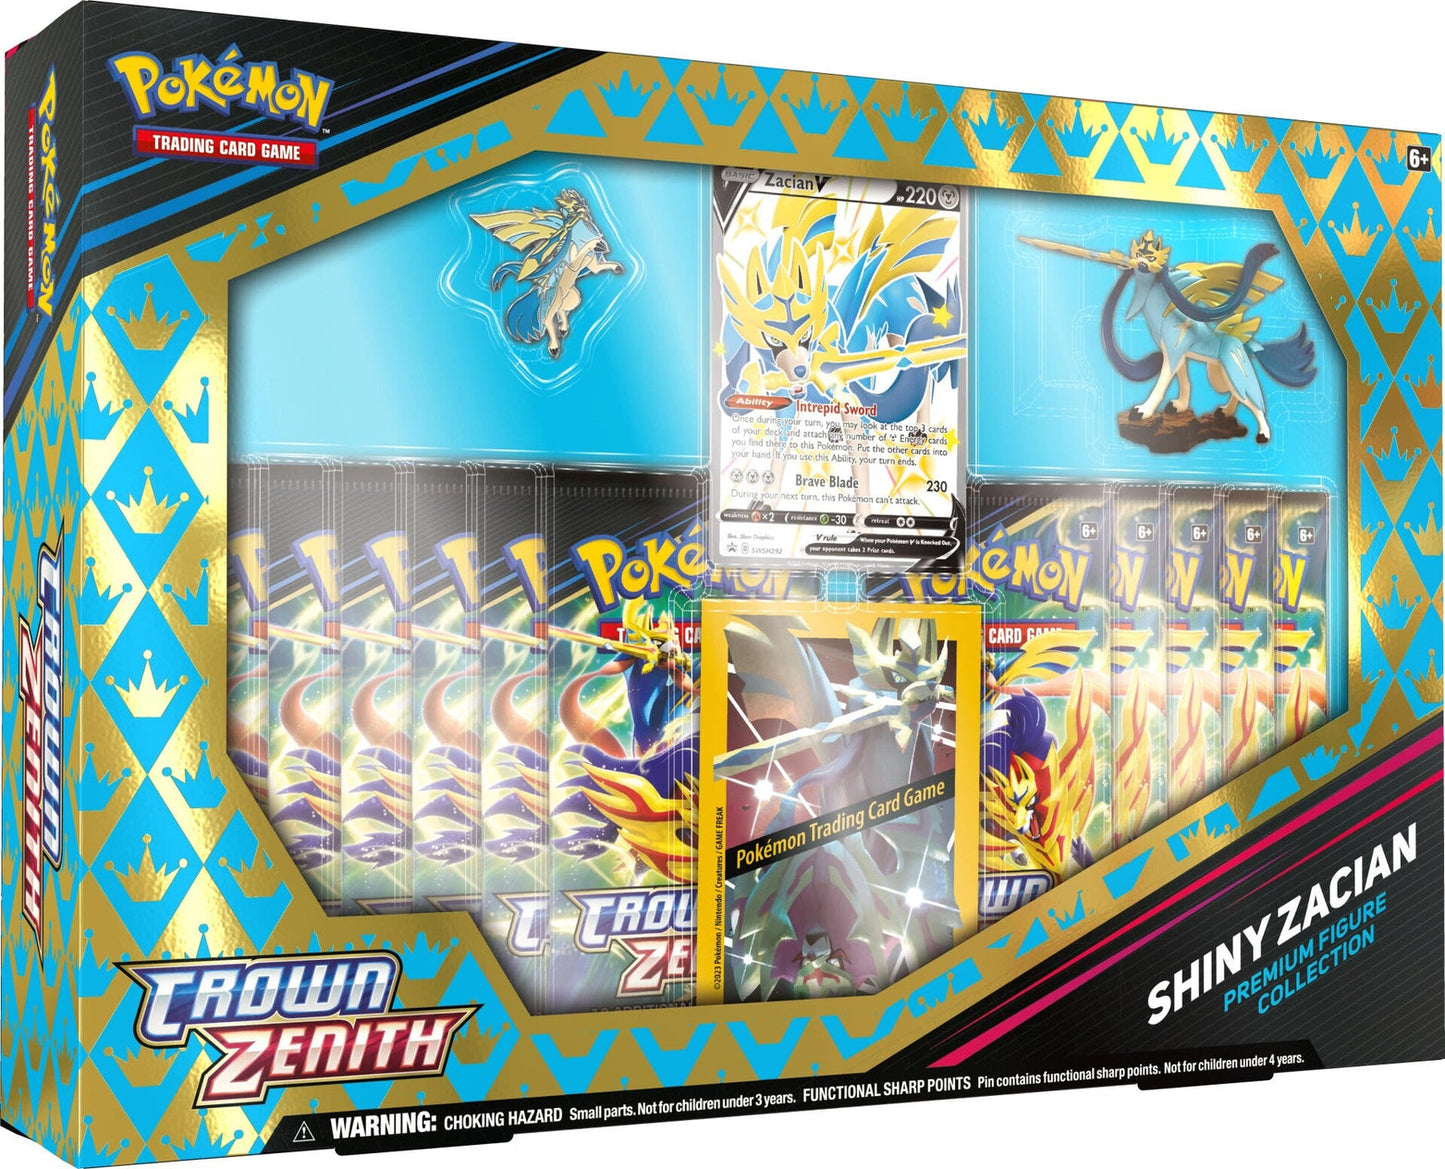 [PRE-ORDER] Pokemon TCG SS12.5 Crown Zenith Premium Figure Box